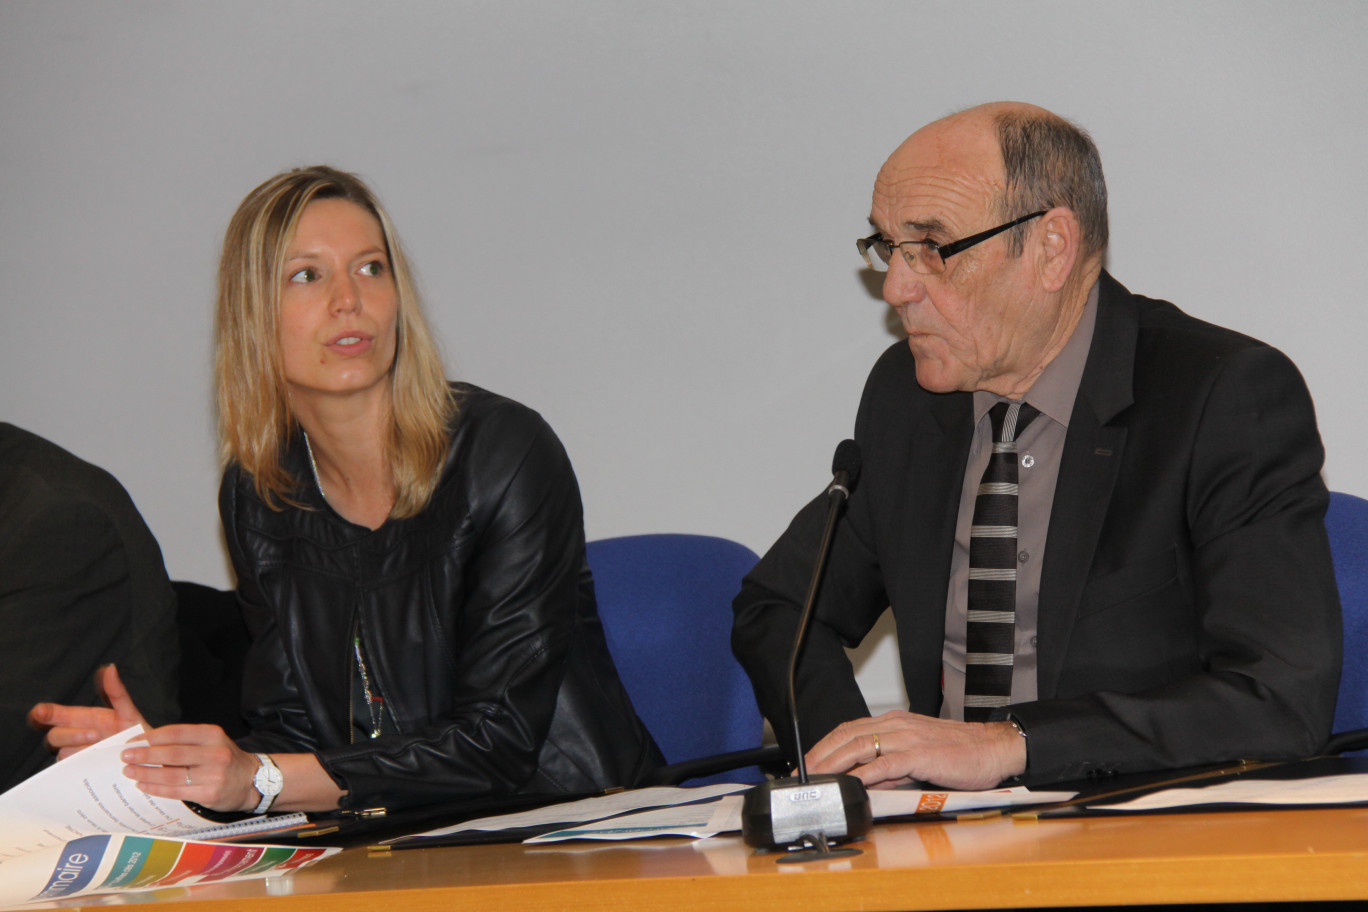 Marieke Sikora, directrice d'Initiative Grand Arras, et Gérard Delpierre, président, ont présenté le bilan 2012 et leurs réflexions pour les prochaines années.